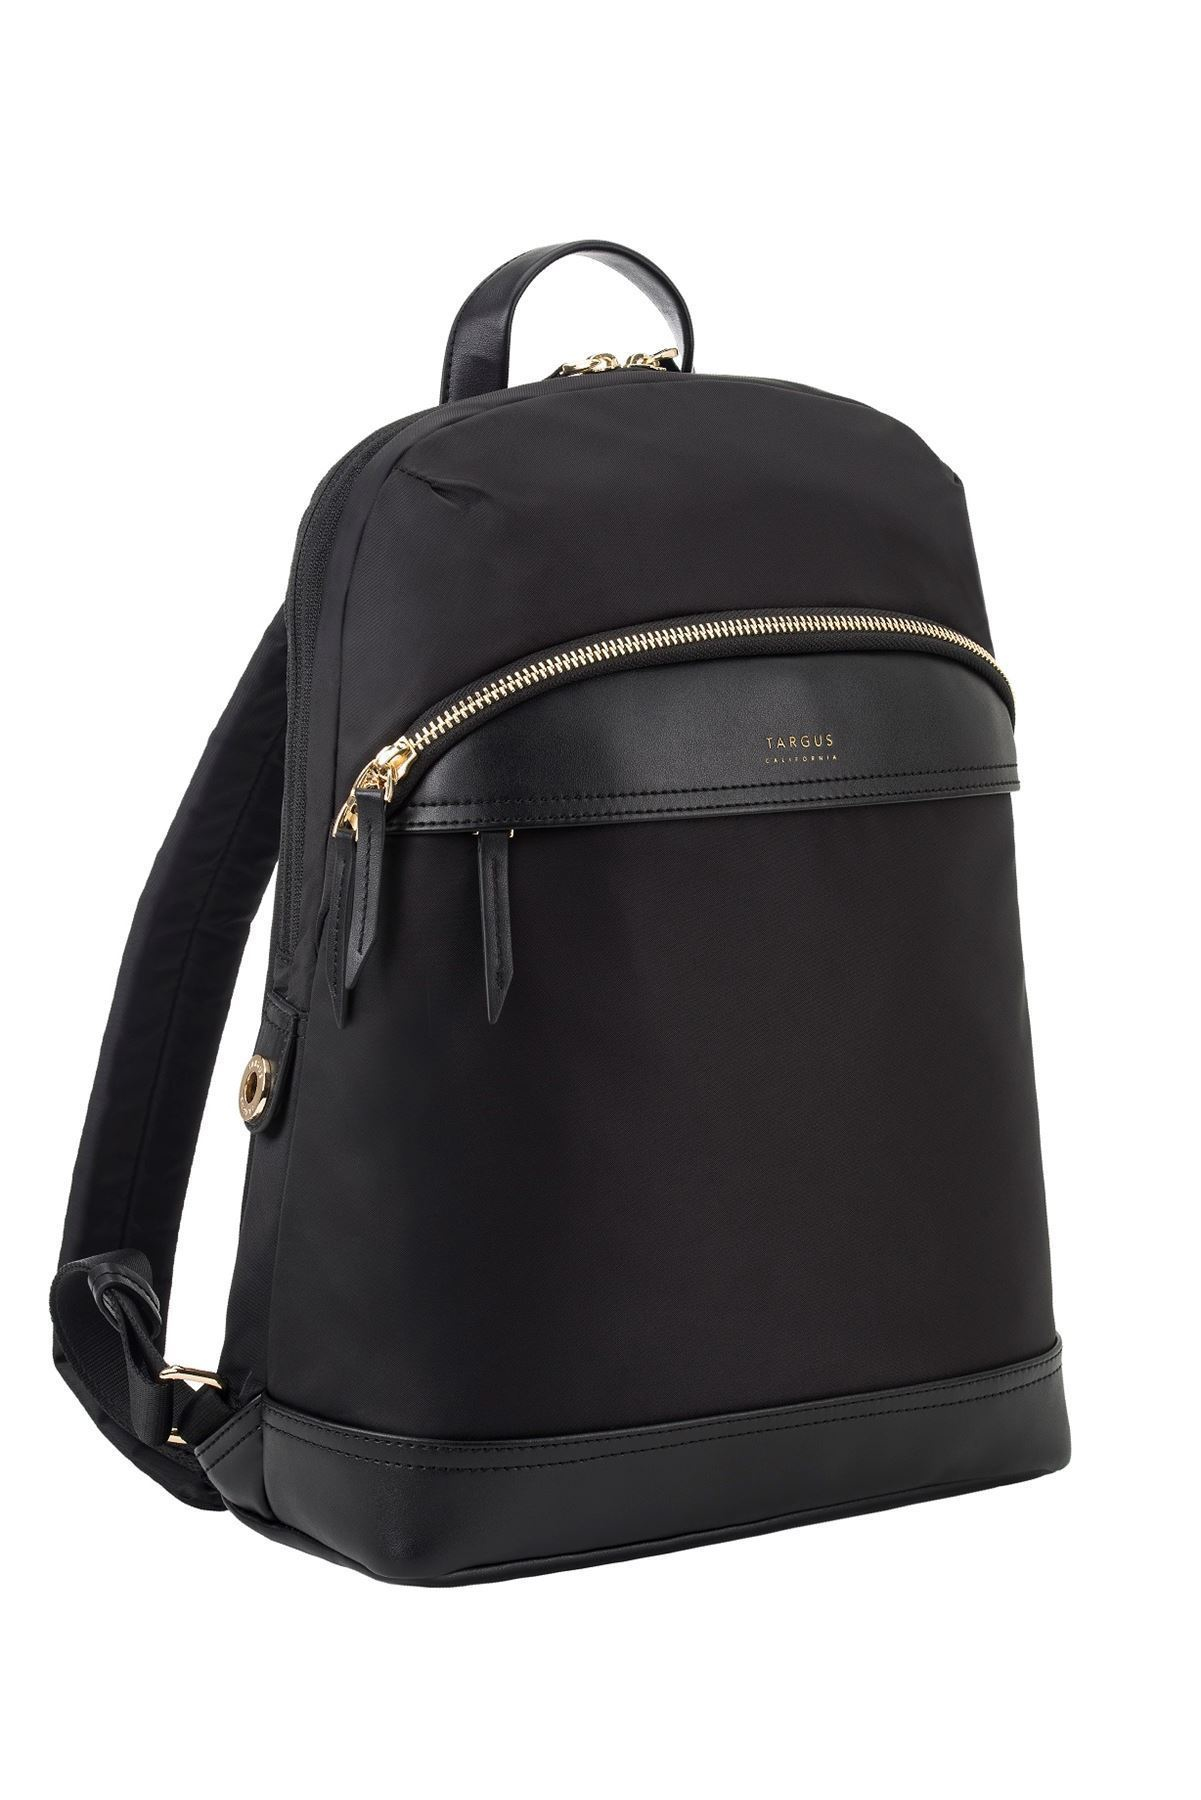 12in Newport Backpack Black Tsb946gl - WC01